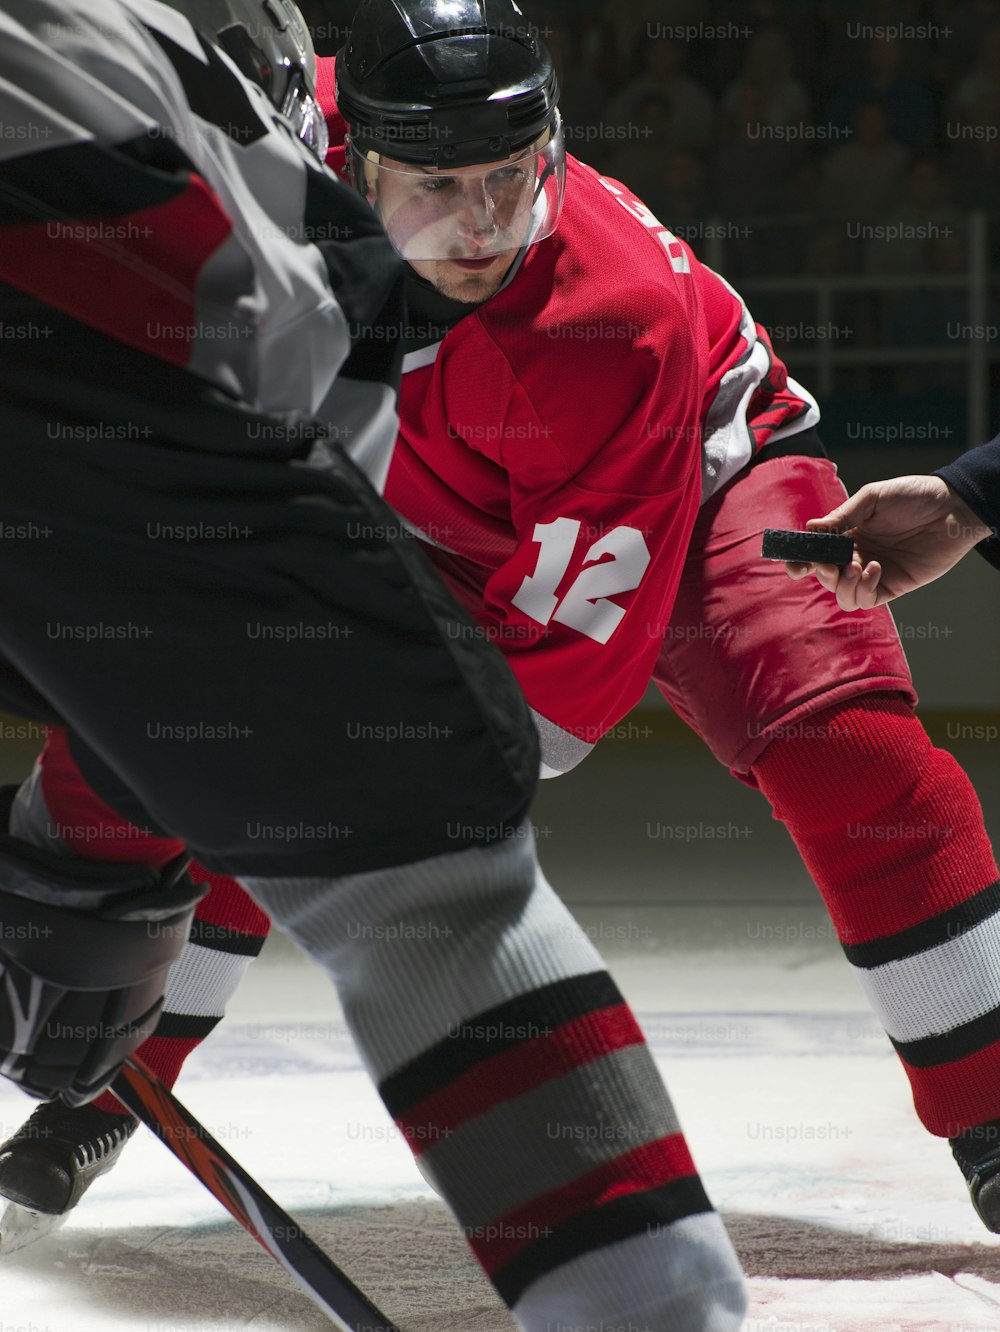 Un homme portant un maillot rouge joue au hockey sur glace